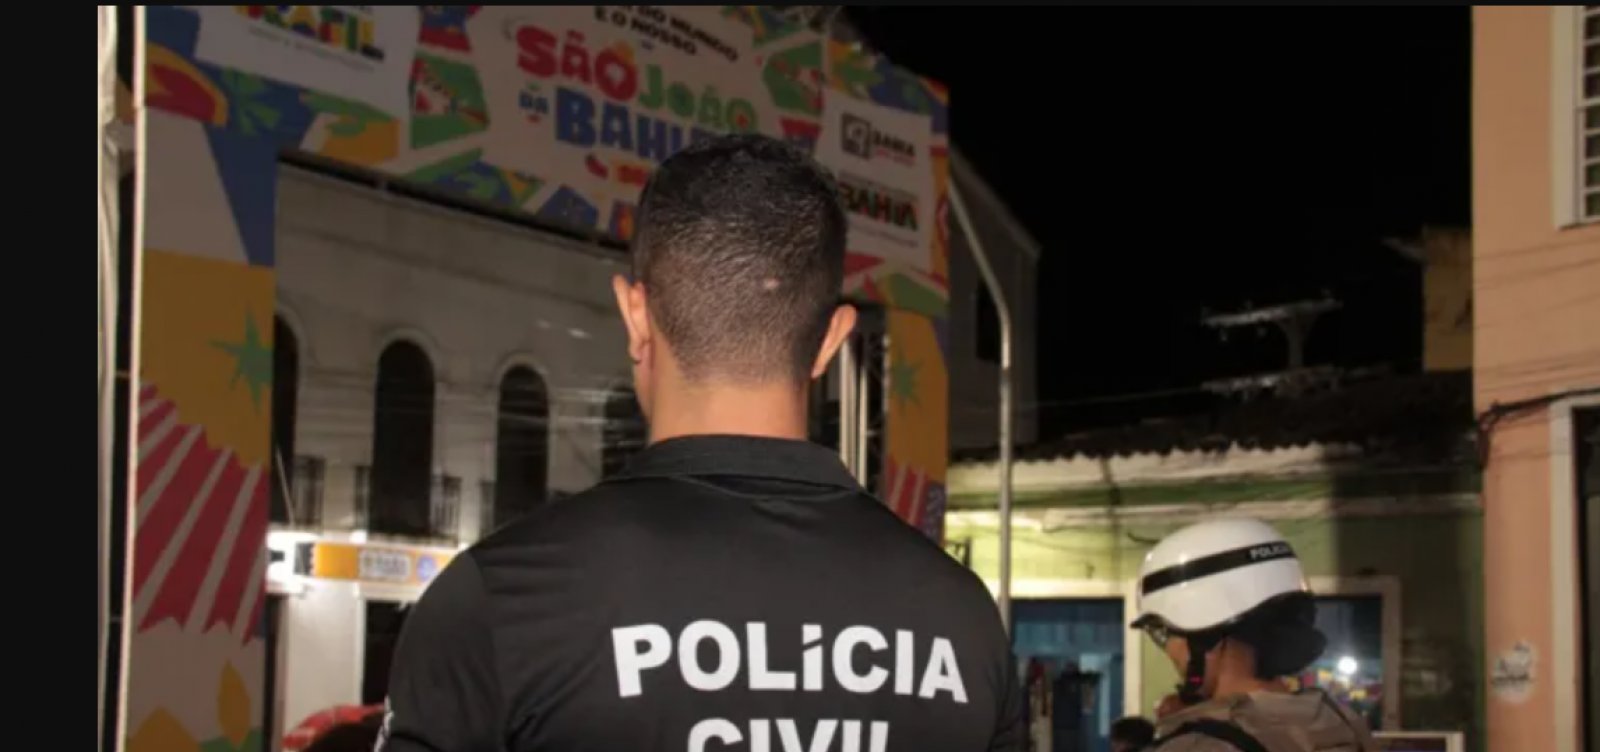 São João da Bahia segue sem registro de crimes graves